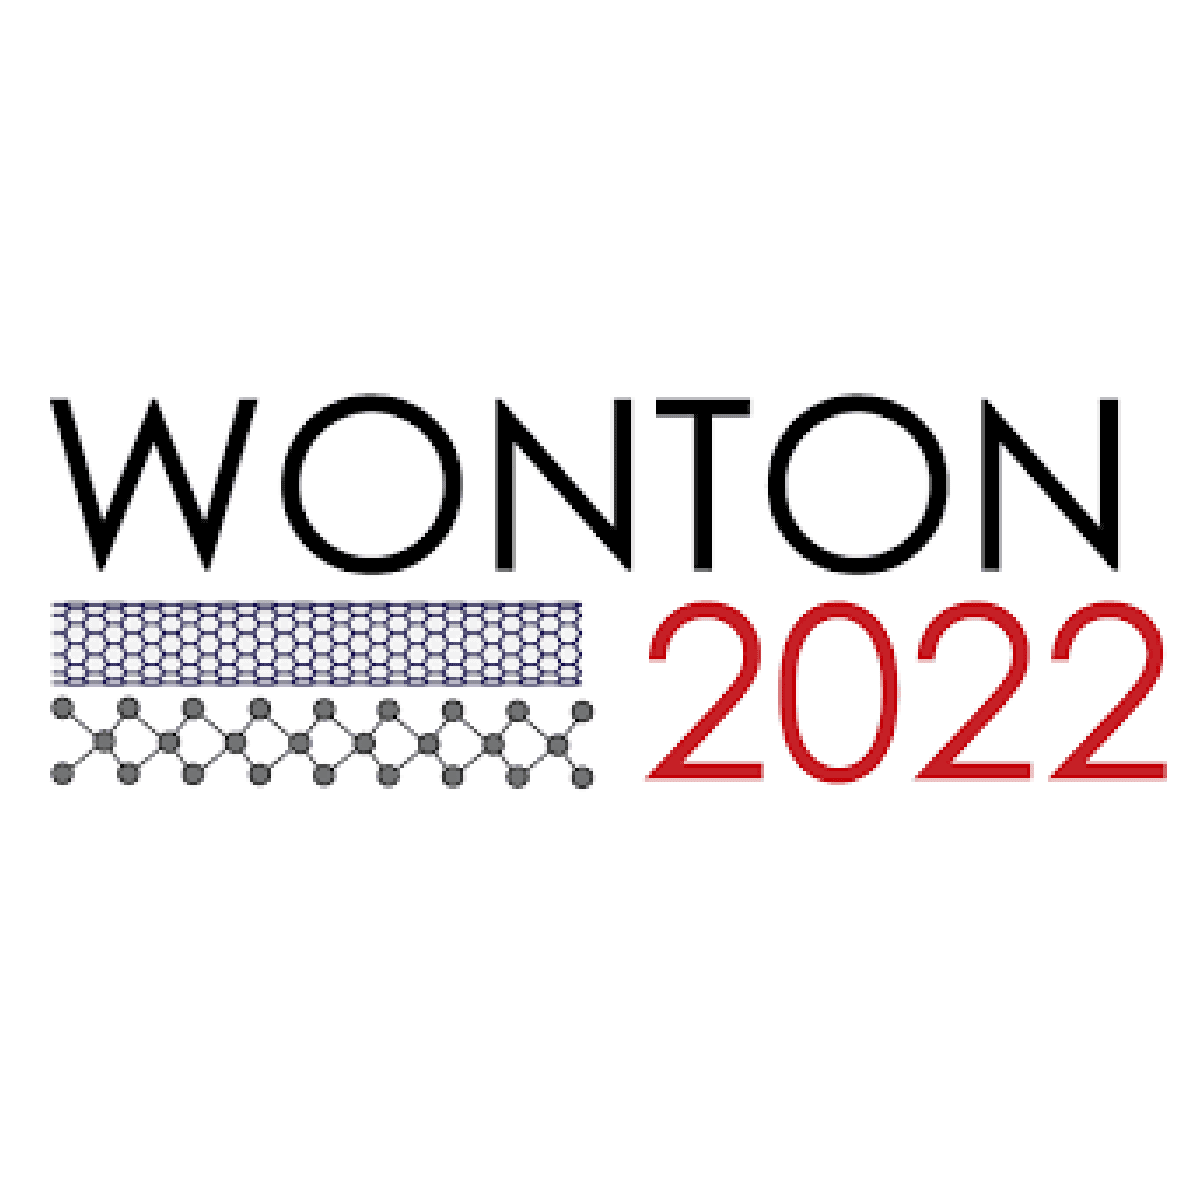 WONTON 2022